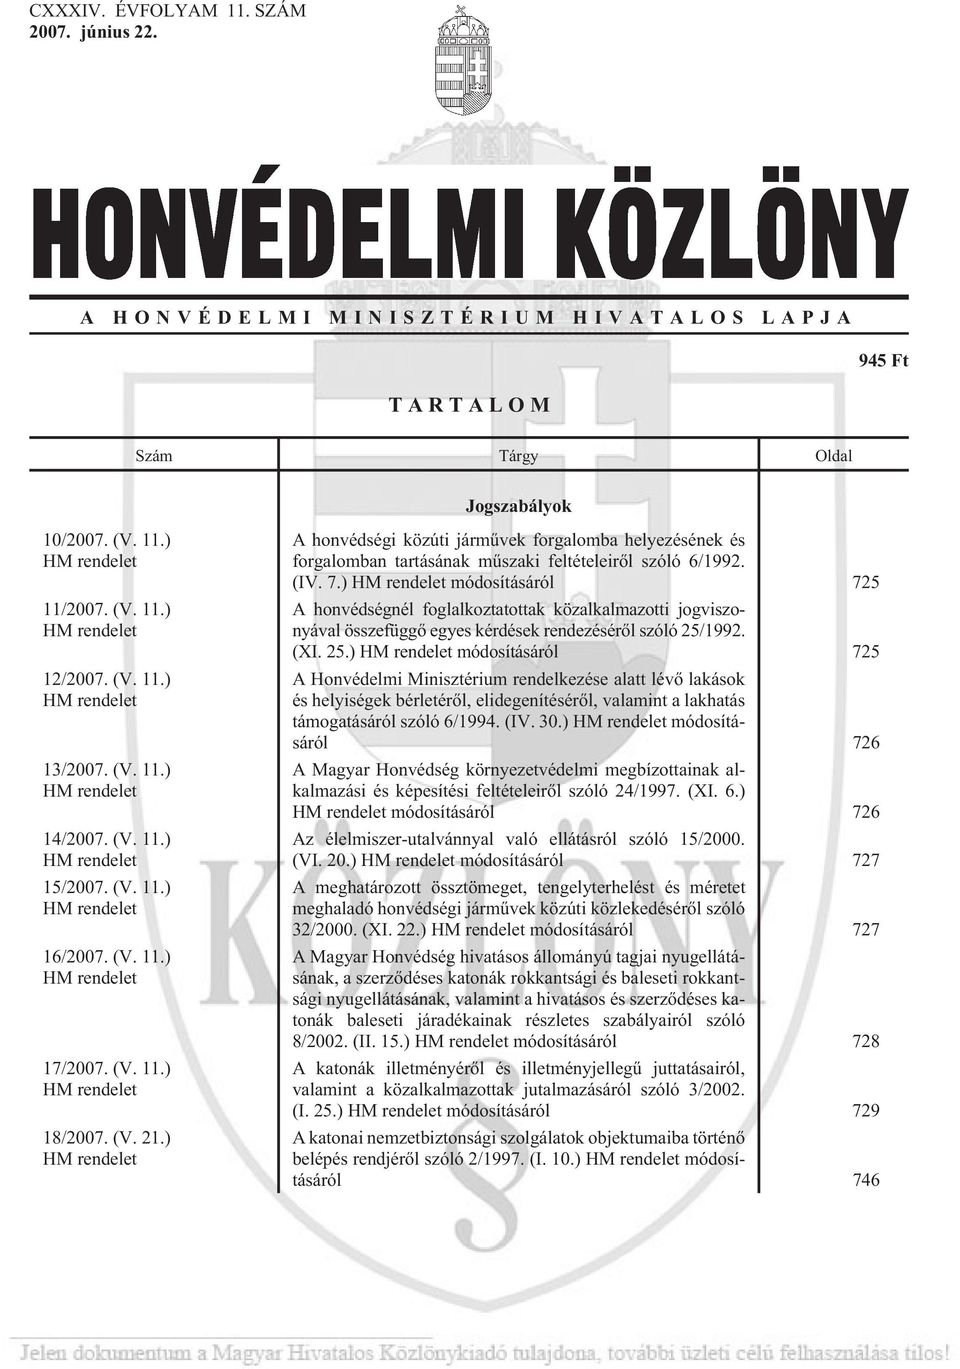 ) HM rendelet A honvédségi közúti jármûvek forgalomba helyezésének és forgalomban tartásának mûszaki feltételeirõl szóló 6/1992. (IV. 7.